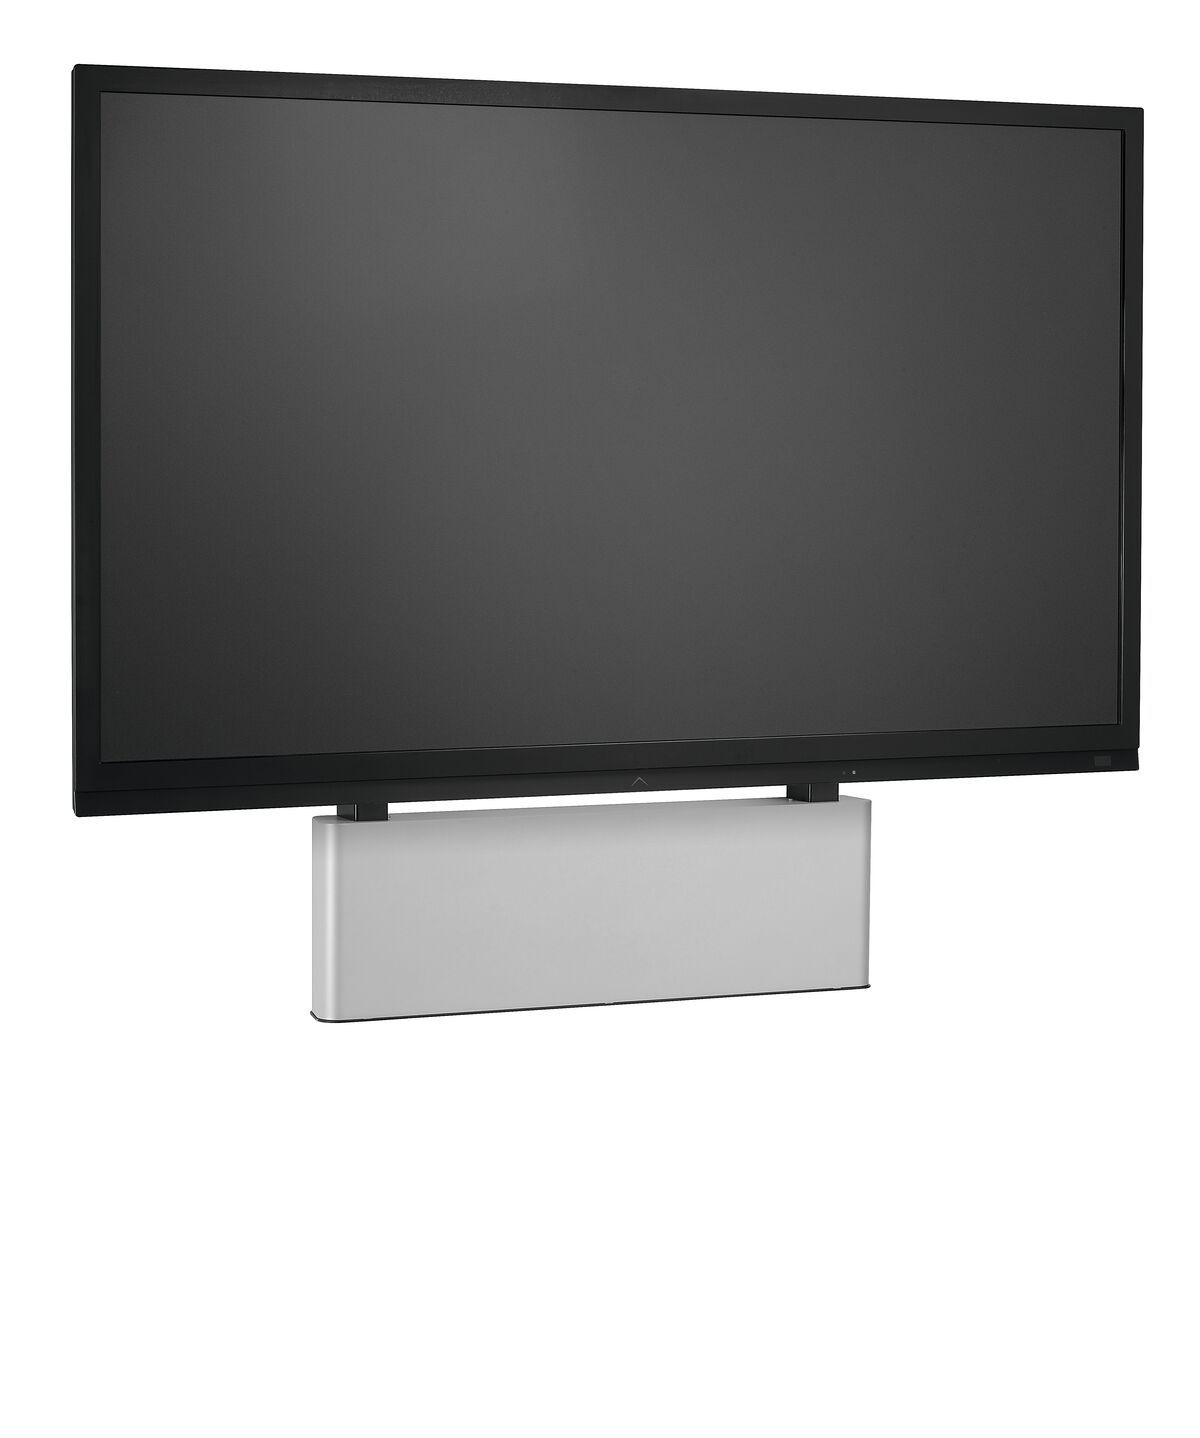 Display-Wandhalterung motorisiert / höhenverstellbar, passend für 4K UHD Flachbildschirm